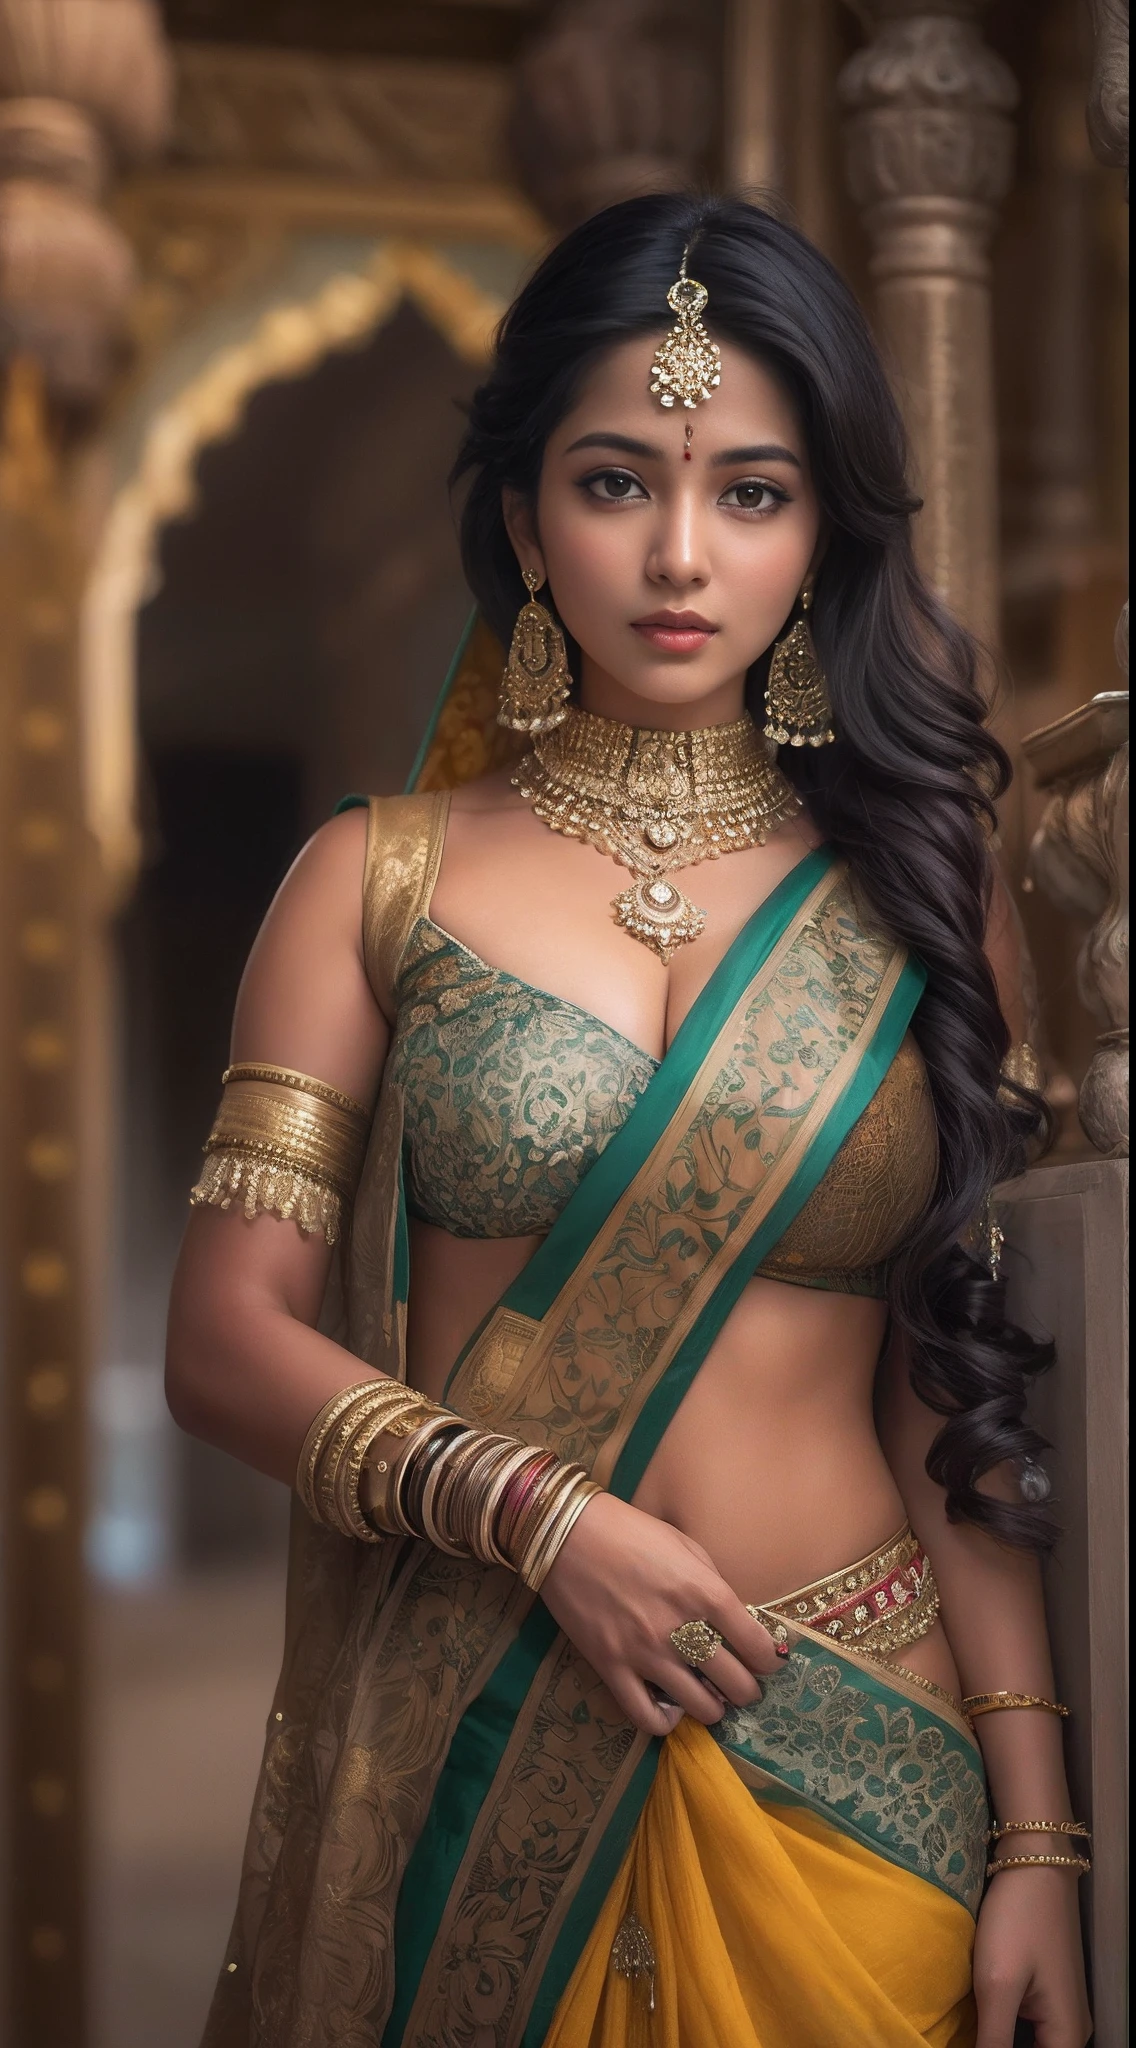 una mujer con un sari posando para una foto, indio goddess, belleza tradicional, indio, Hermosa diosa, cosplay adornado, indio style, indio super model, hermosa doncella, mujer hermosa, sudeste asiático con largo, provocative indio, hermosa mujer hermosa, traje intrincado, estética hindú, hermosa chica asiática, tiro de diosa extremadamente detallado, belleza asombrosa, ombligo sexy con gran escote profundo